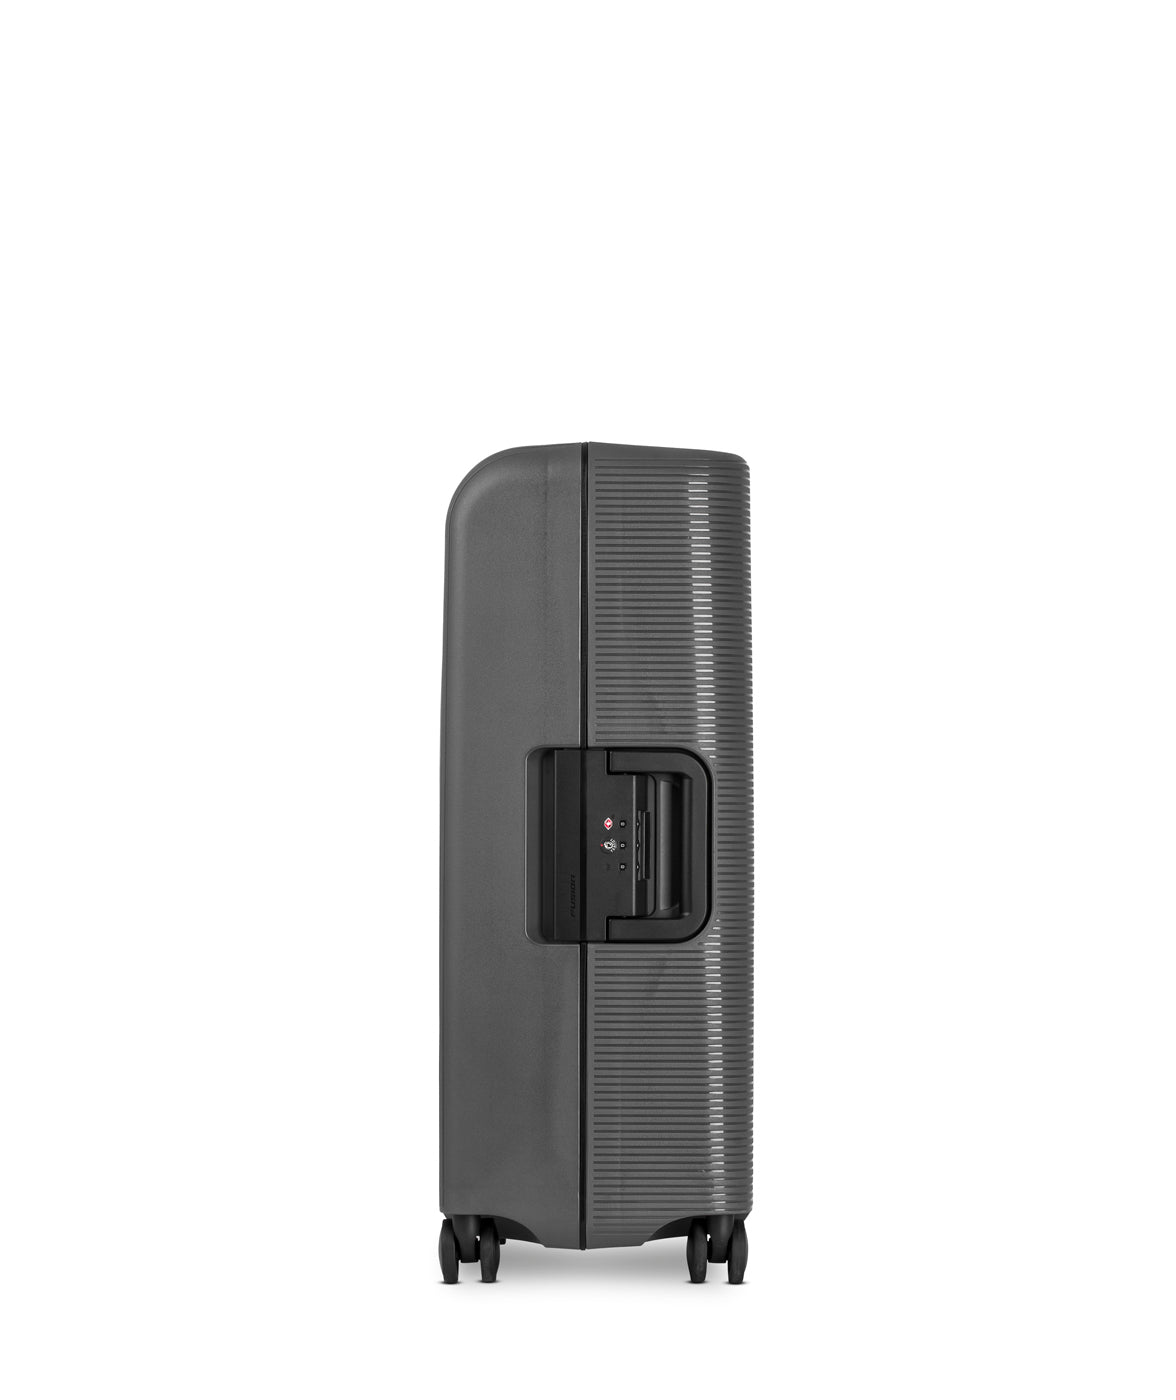 Echolac Fusion Koffer, Medium 66 cm, Dunkelgrau oben 